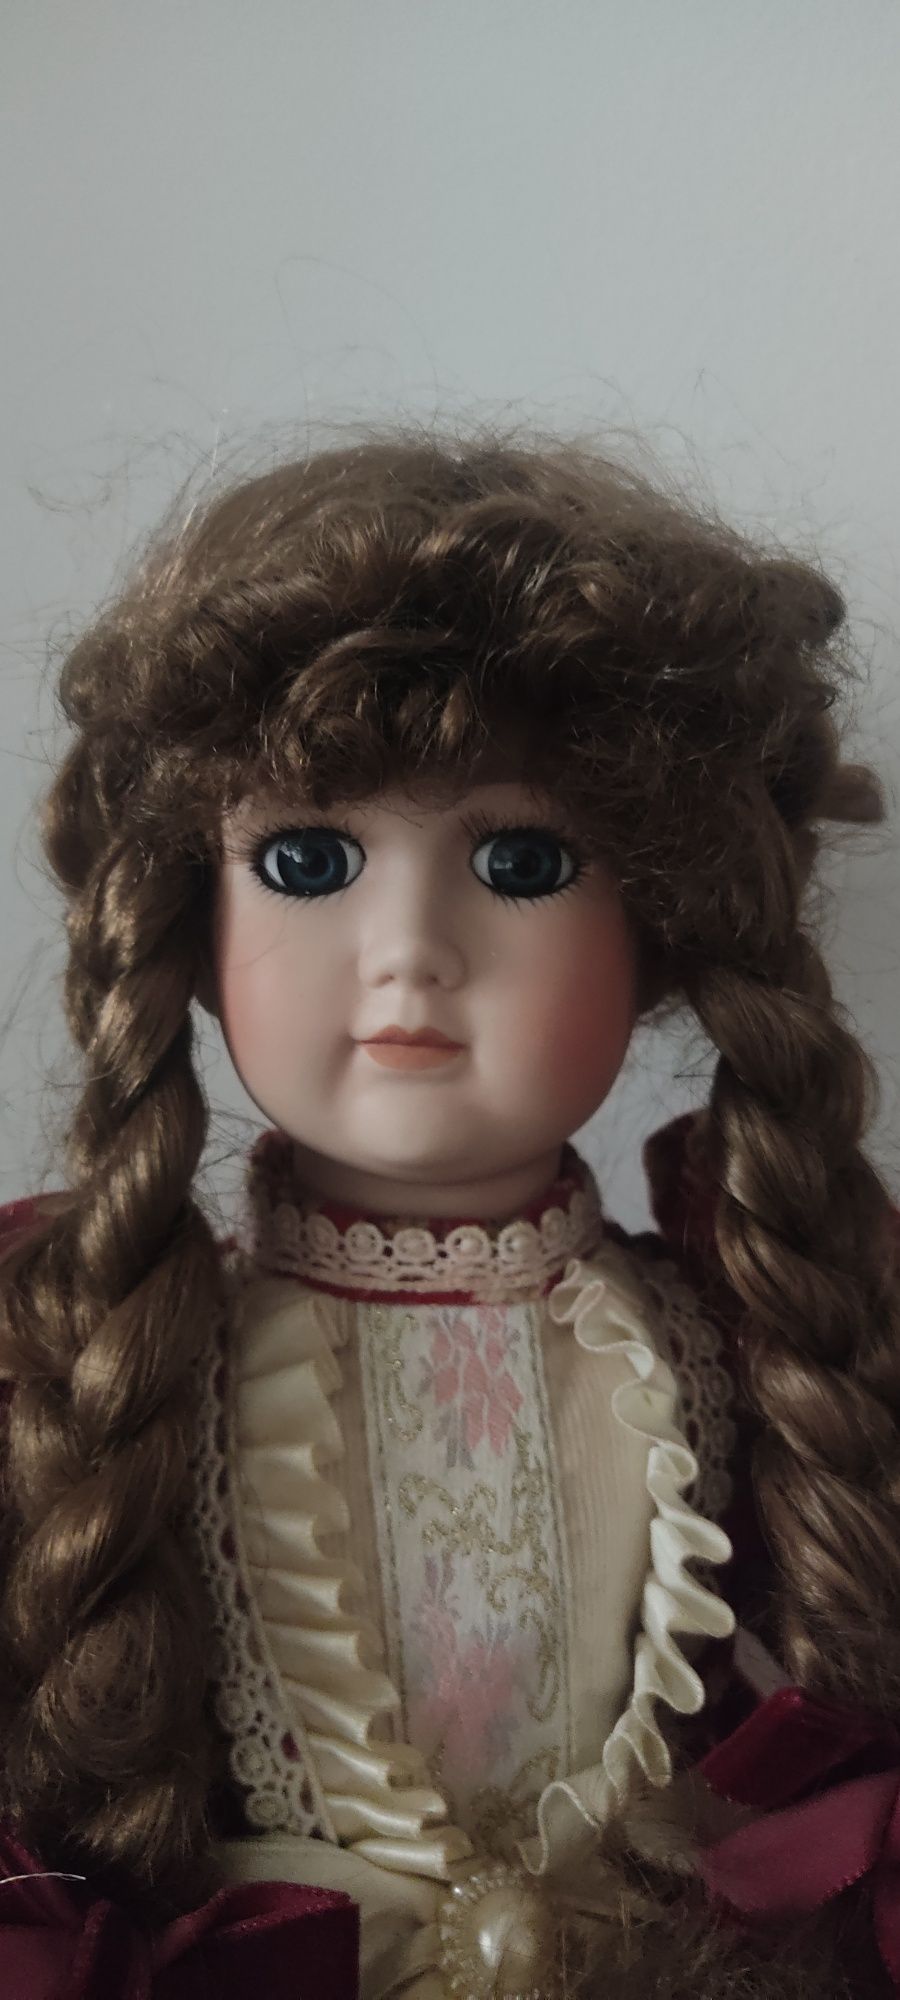 Vendo boneca antiga cabeça porcelana de 40cm.
Cabeça de porcelana